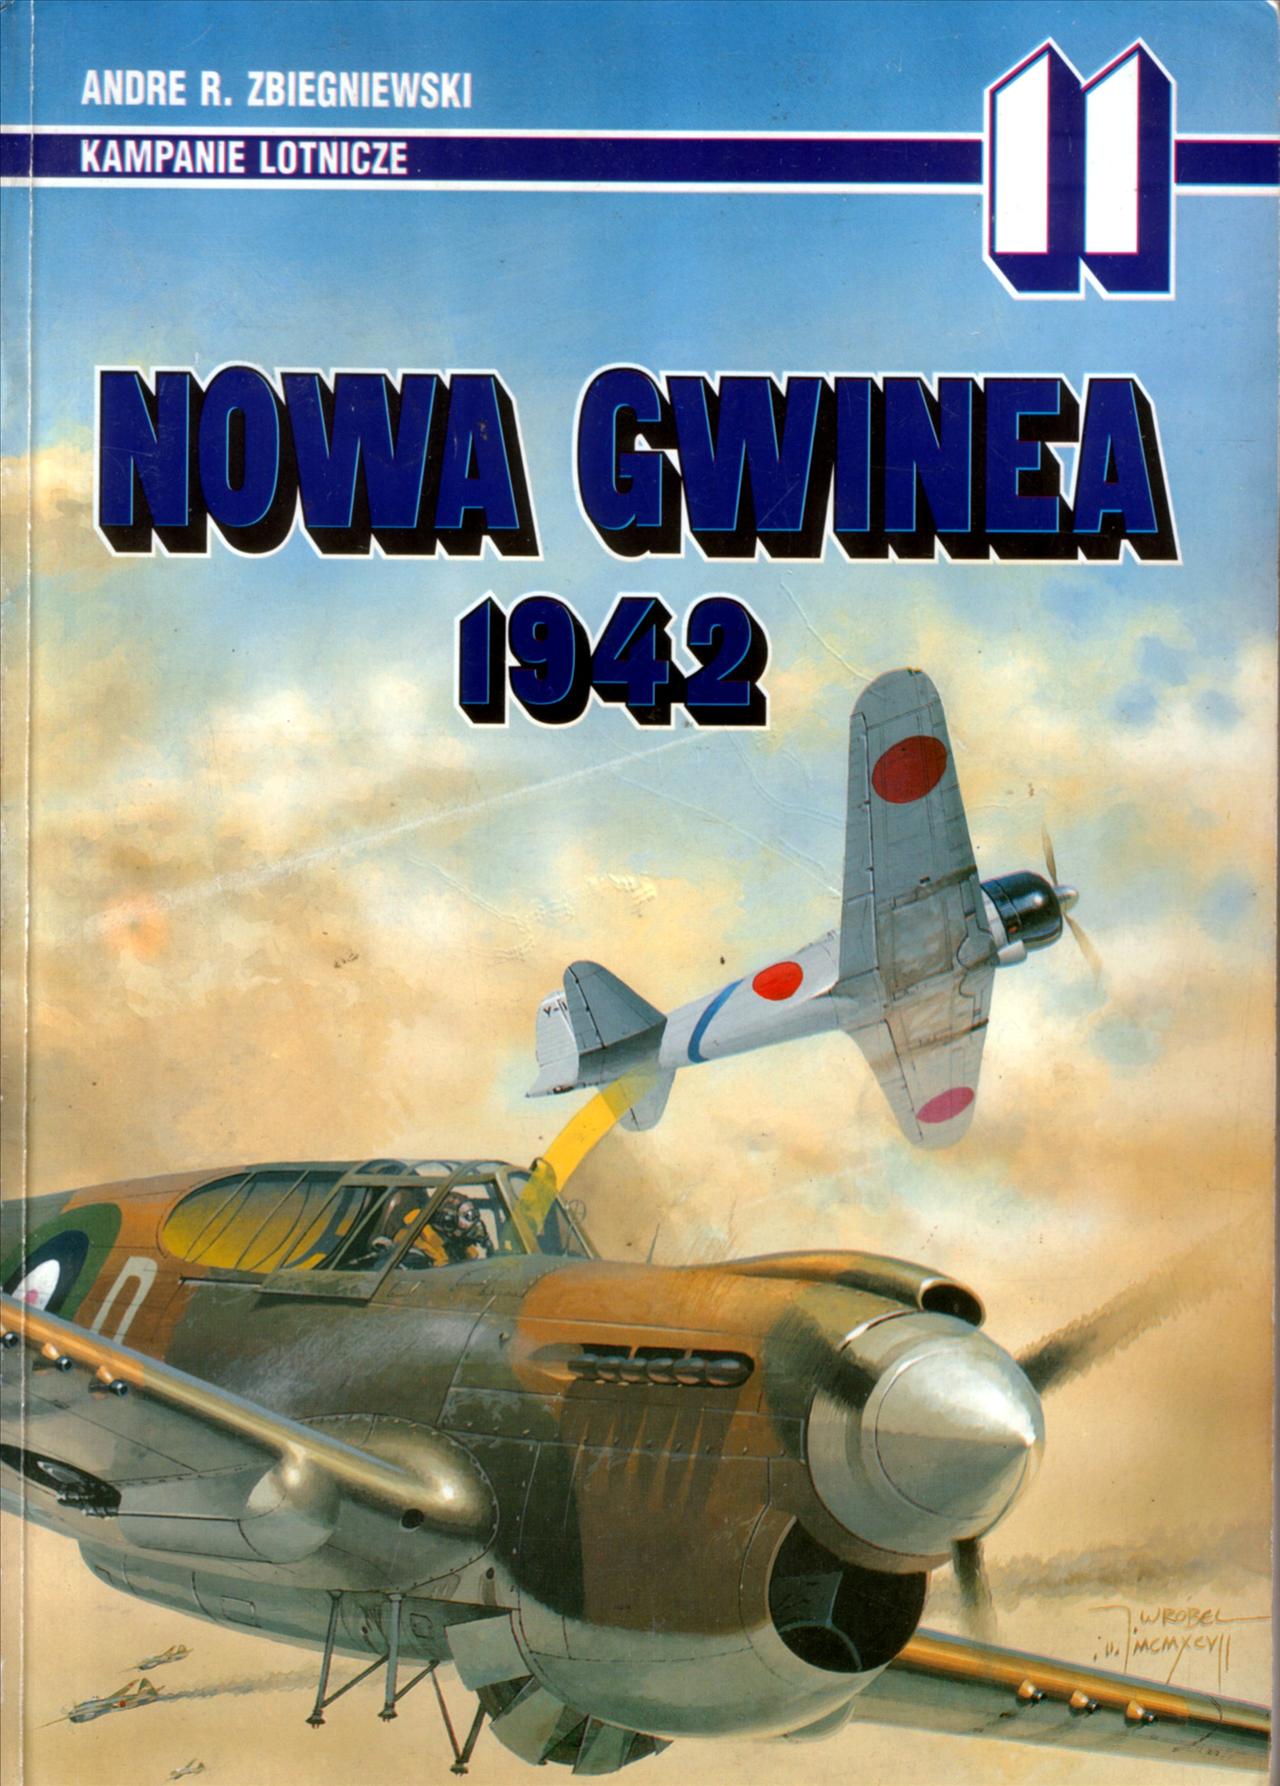 Kampanie Lotnicze - KL-11-Zbiegniewski A.-Nowa Gwinea 1942.jpg